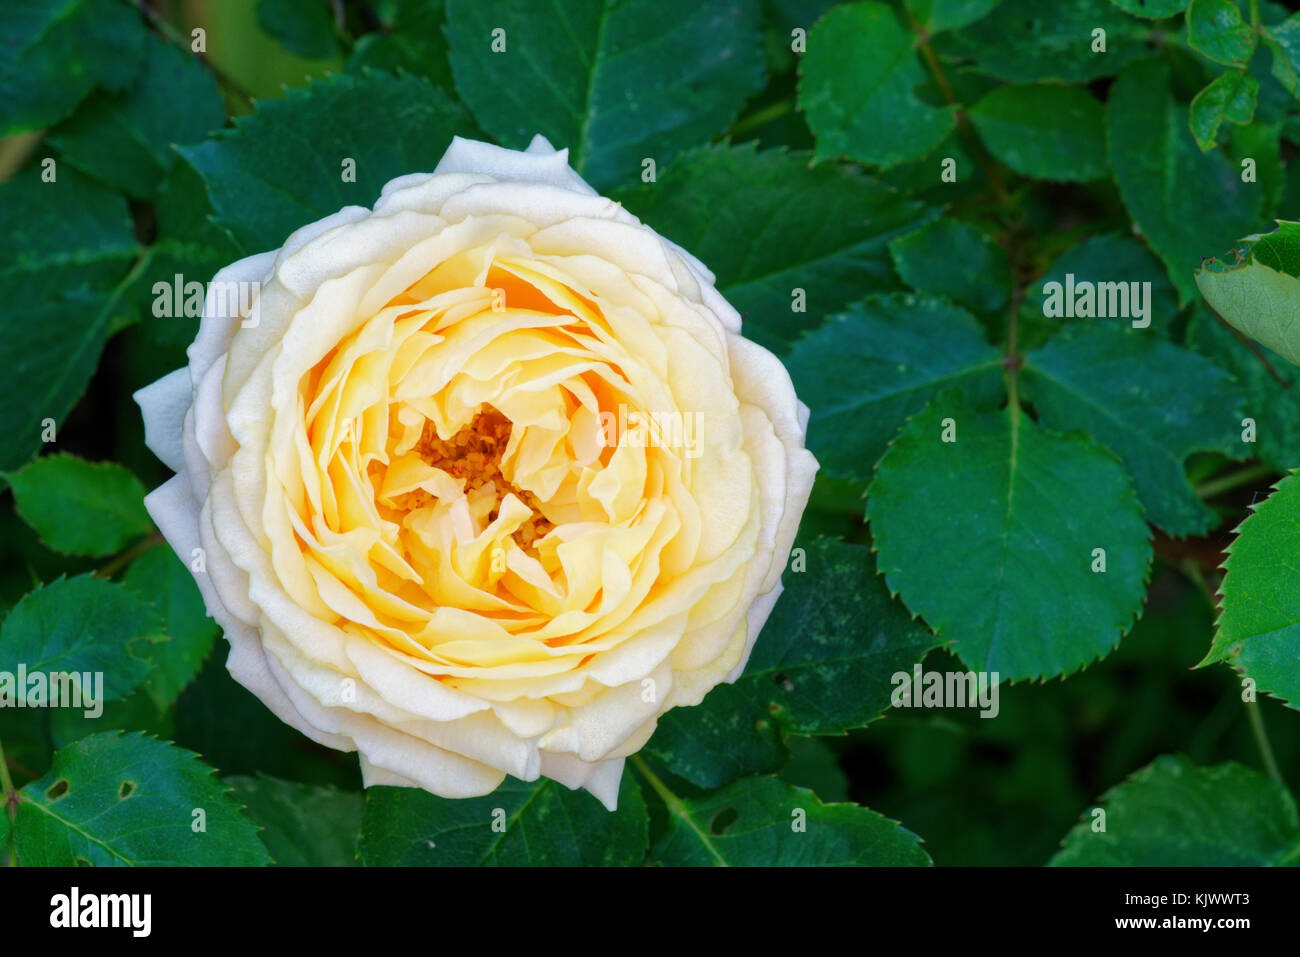 'Dany Hahn' est une rose avec un centre blanc et rose. C'est un abricot ou pêche modéré et a environ 50 à 60 pétales. Il fleurit en grappes au printemps ou en été avec une fleur plus tard dispersée. Banque D'Images